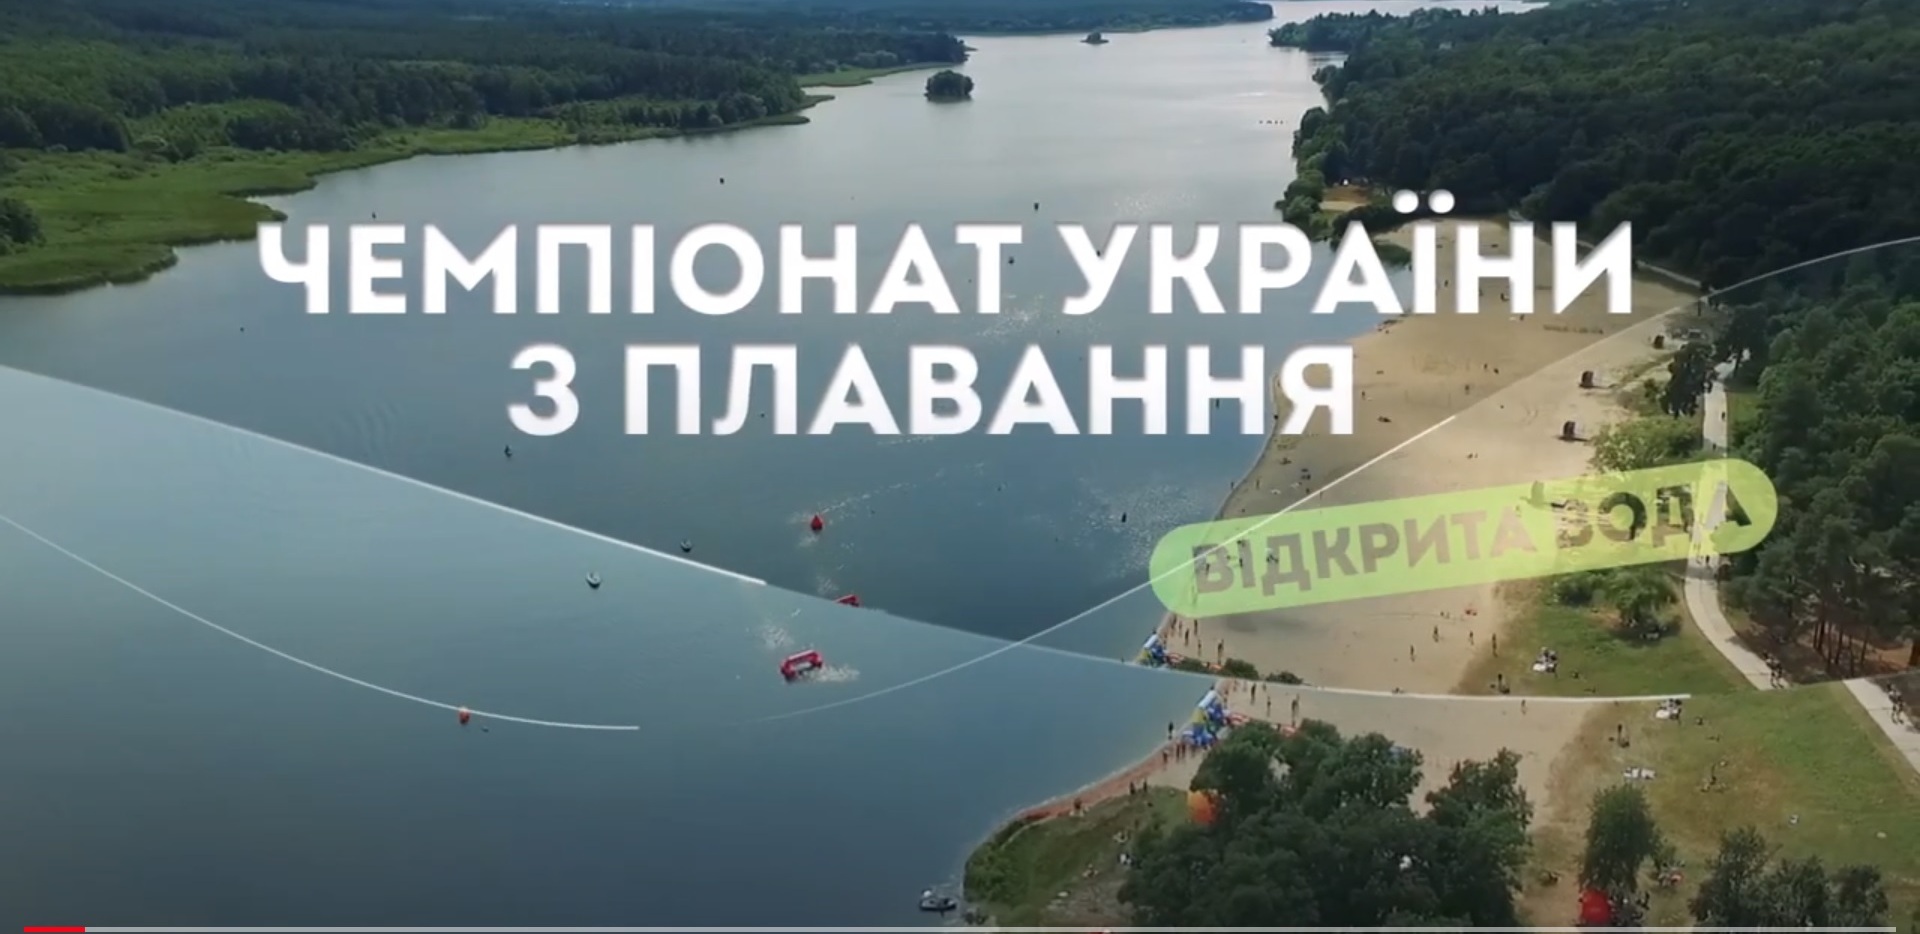 Вперше Чемпіонат України з плавання на відкритій воді відбудеться у Житомирі